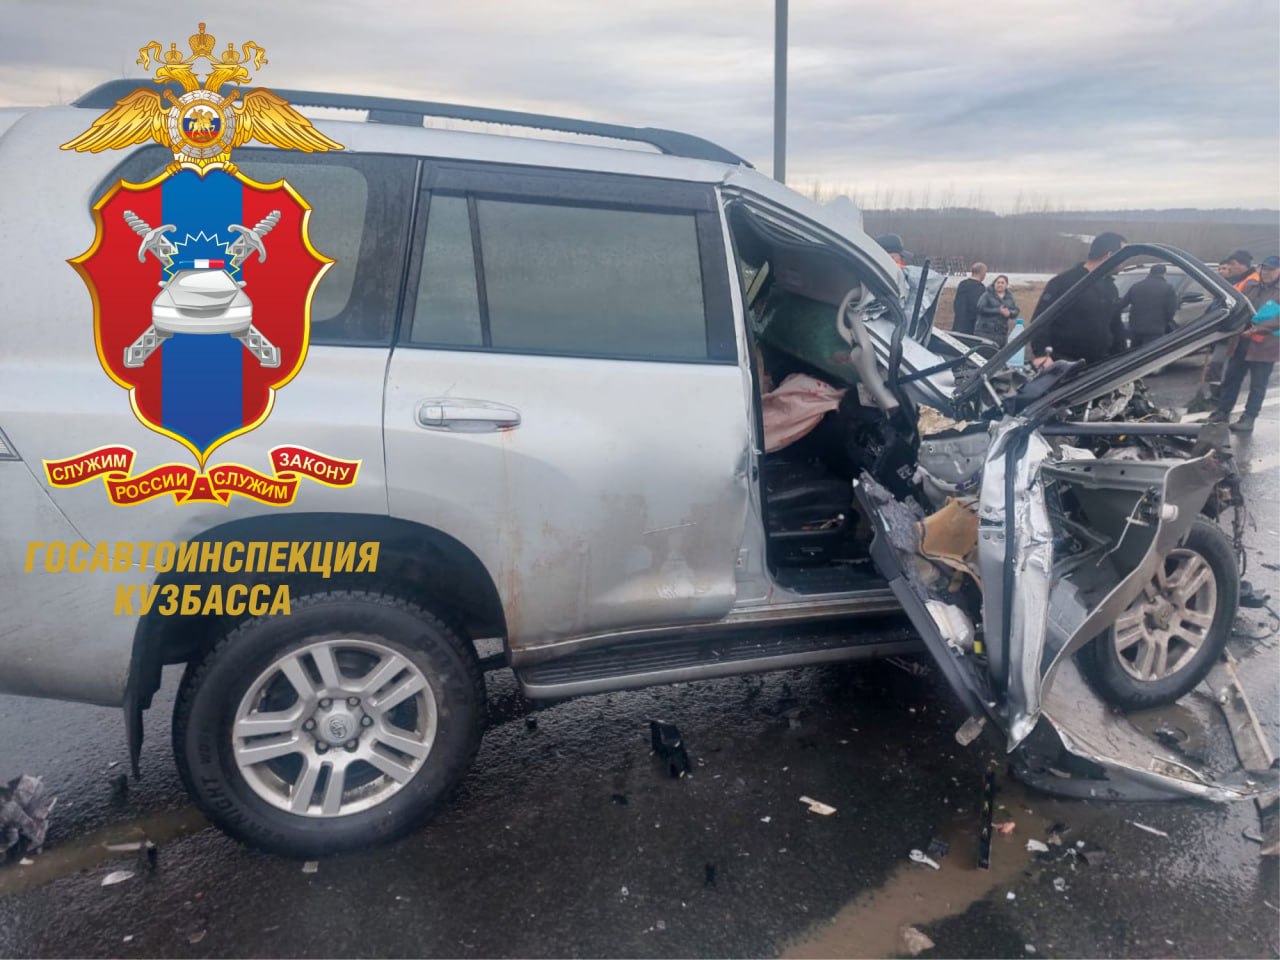 Три человека пострадали в жестком ДТП с фурой и внедорожником в Кузбассе